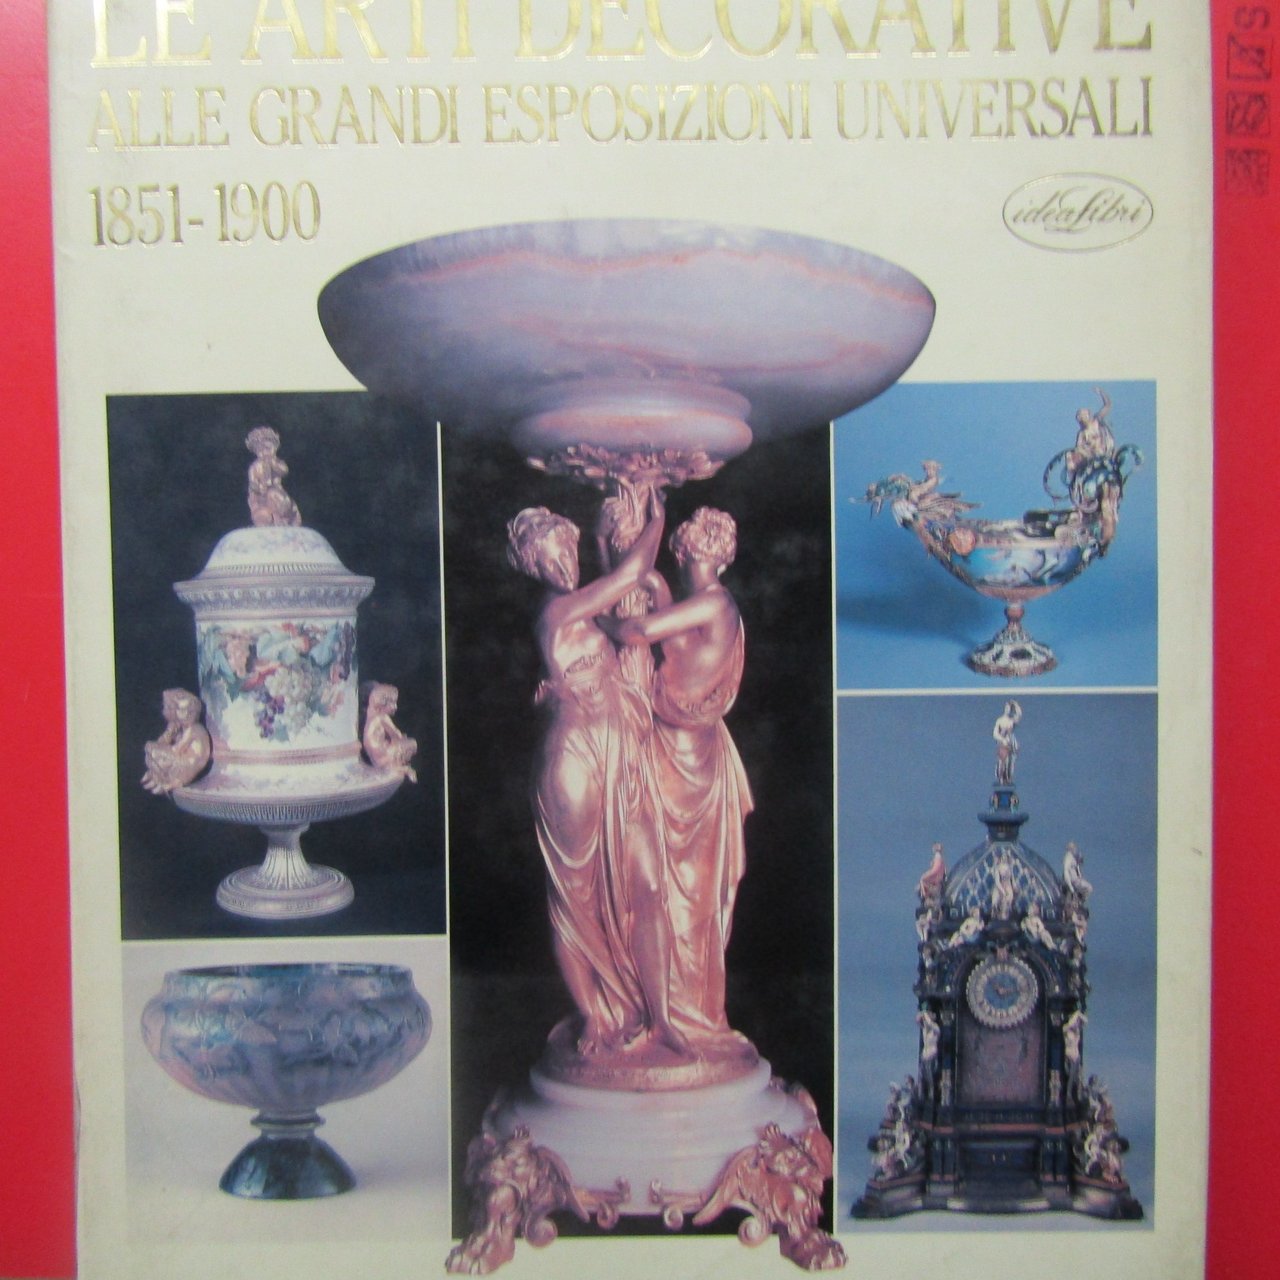 Le Arti Decorative alle grandi Esposizioni Universali 1851-1900